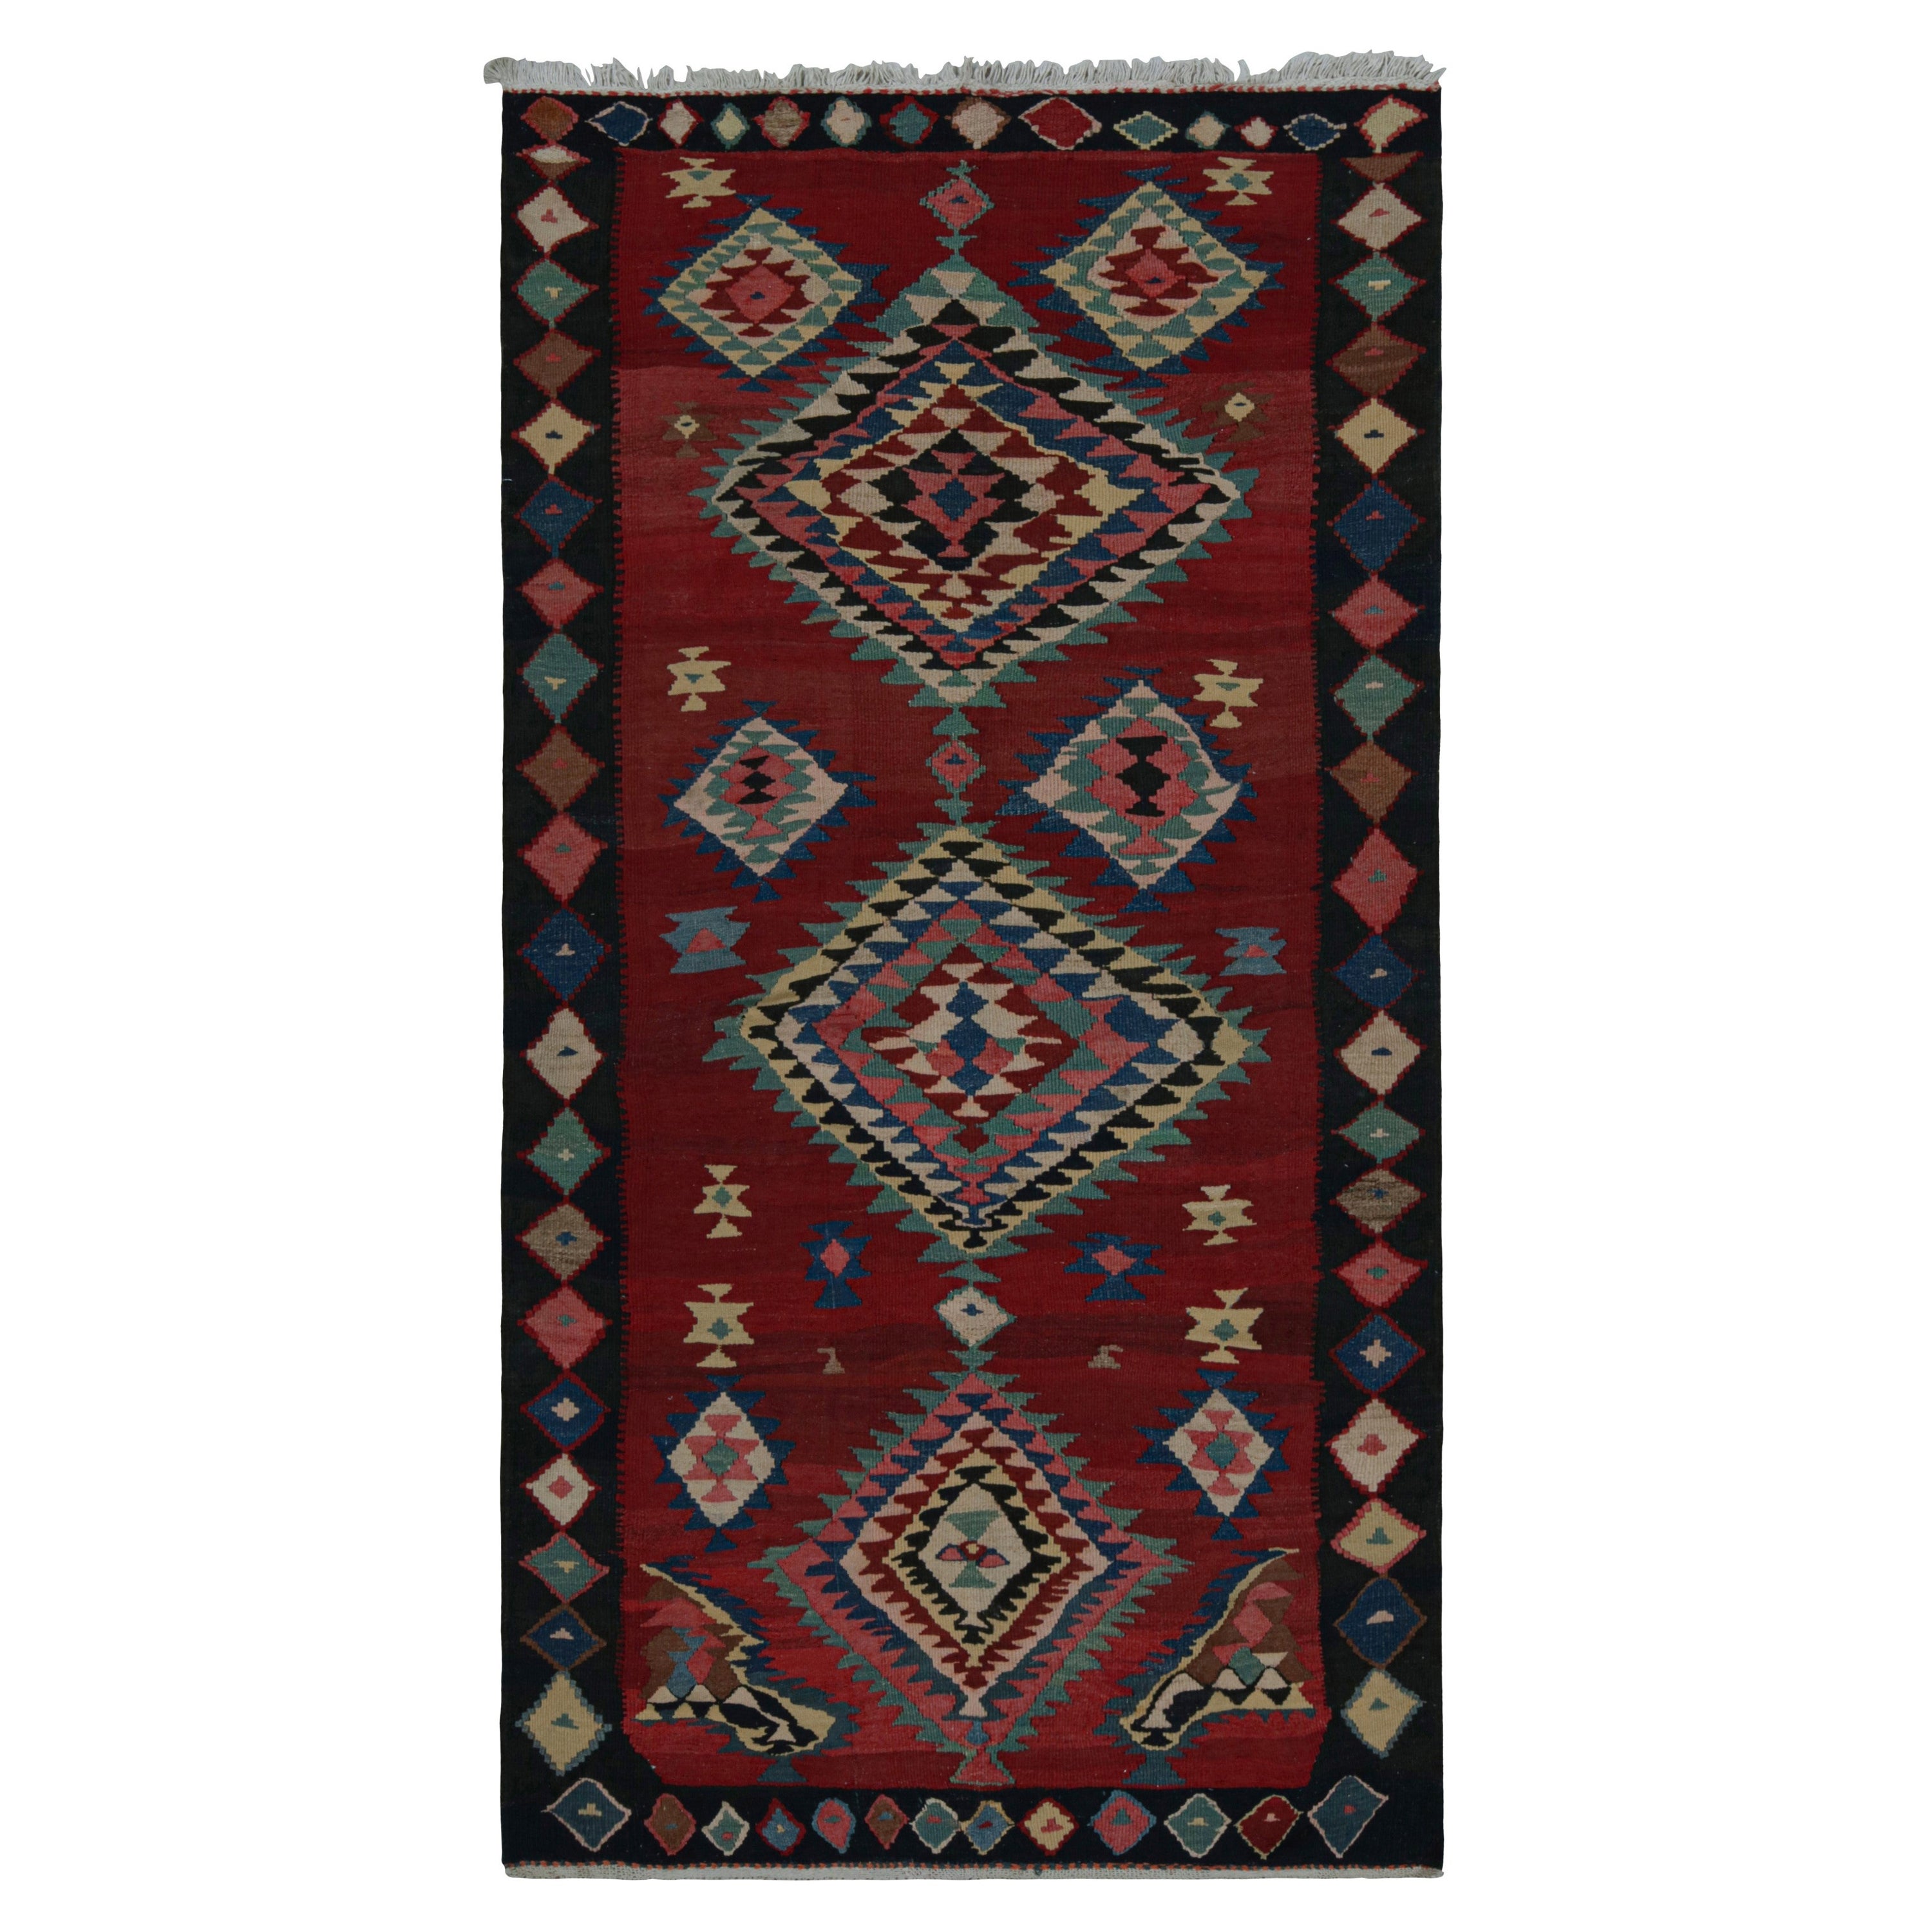 Vintage tribal Afghan Kilim rug, with Geometric Patterns, from Rug & Kilim